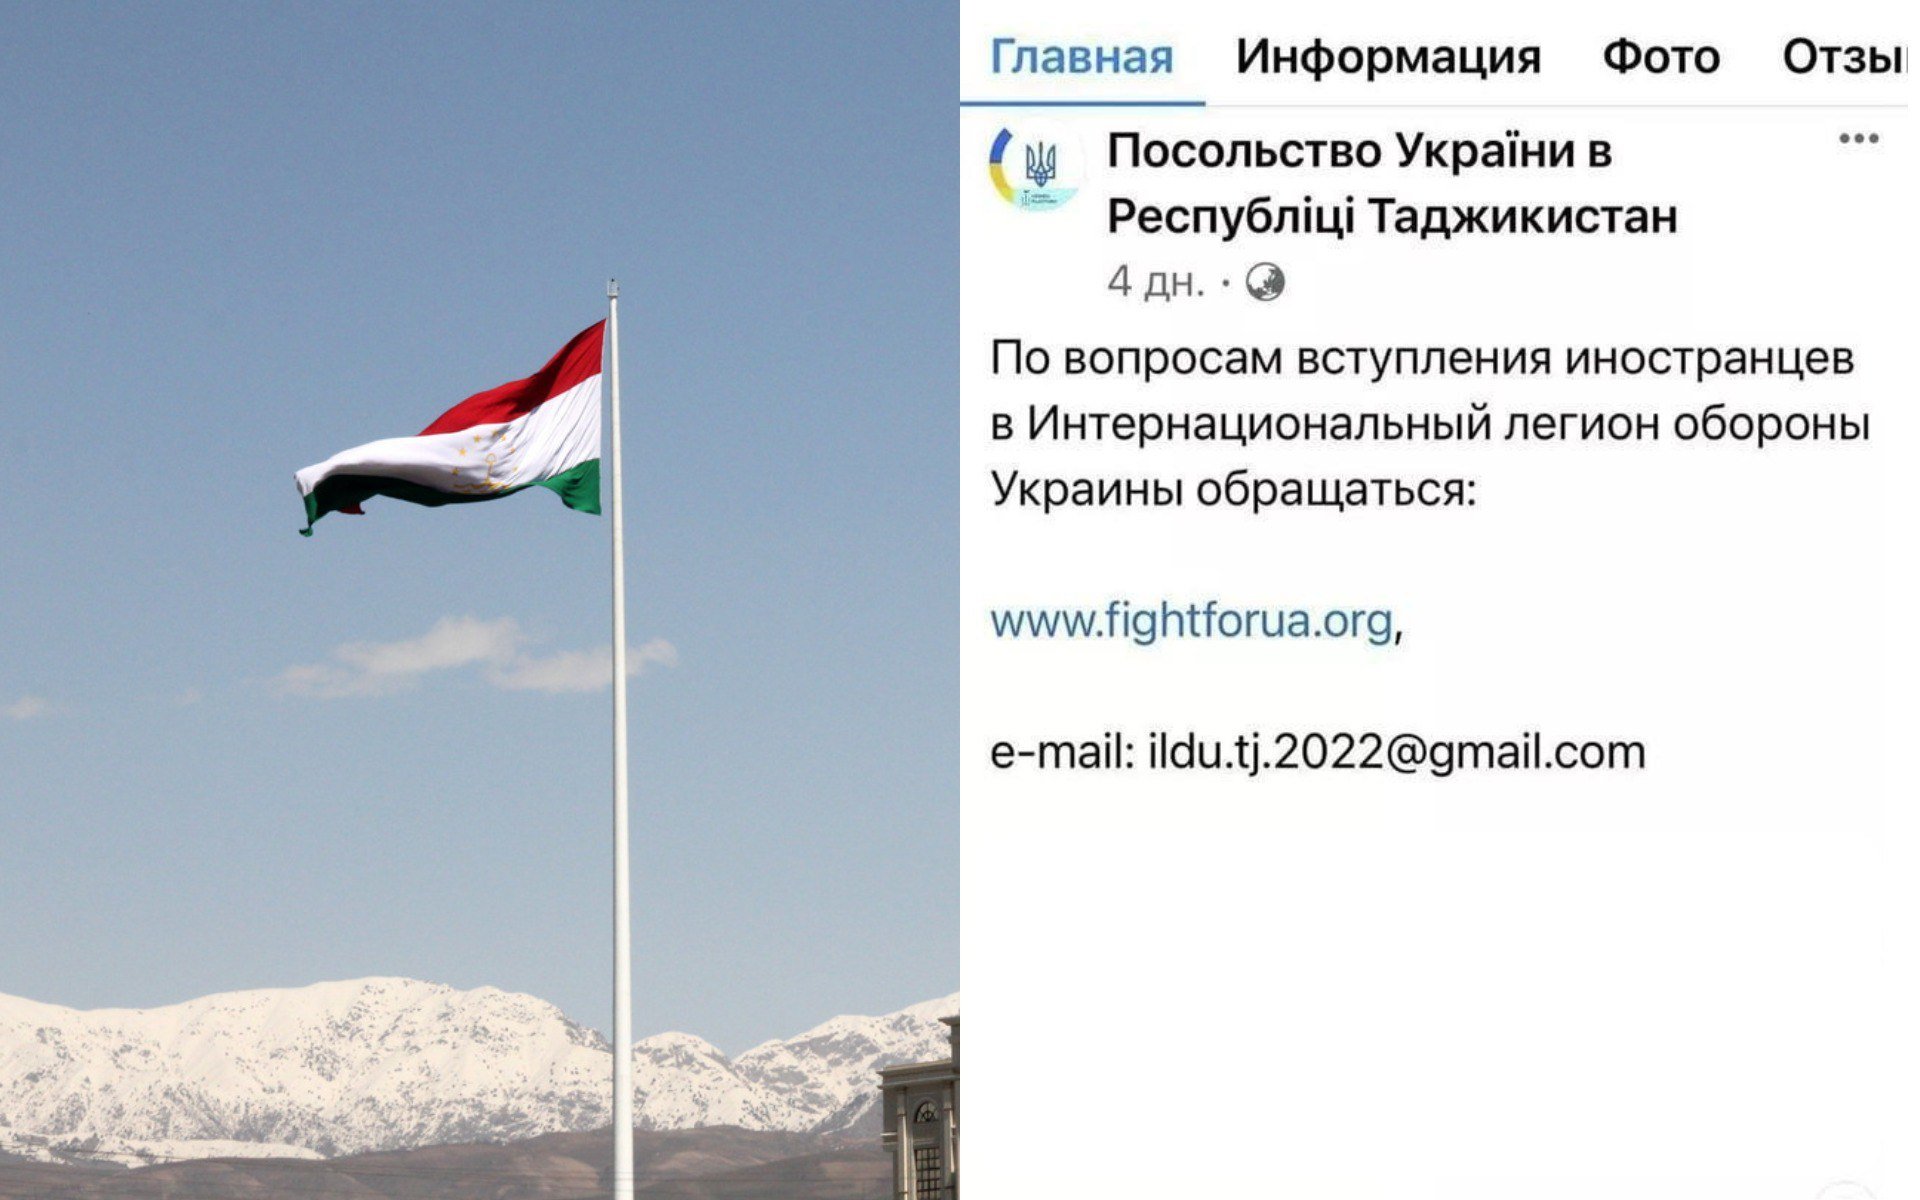 Правда ли, что посольство Украины через Facebook вербовало жителей Таджикистана в Интернациональный легион?